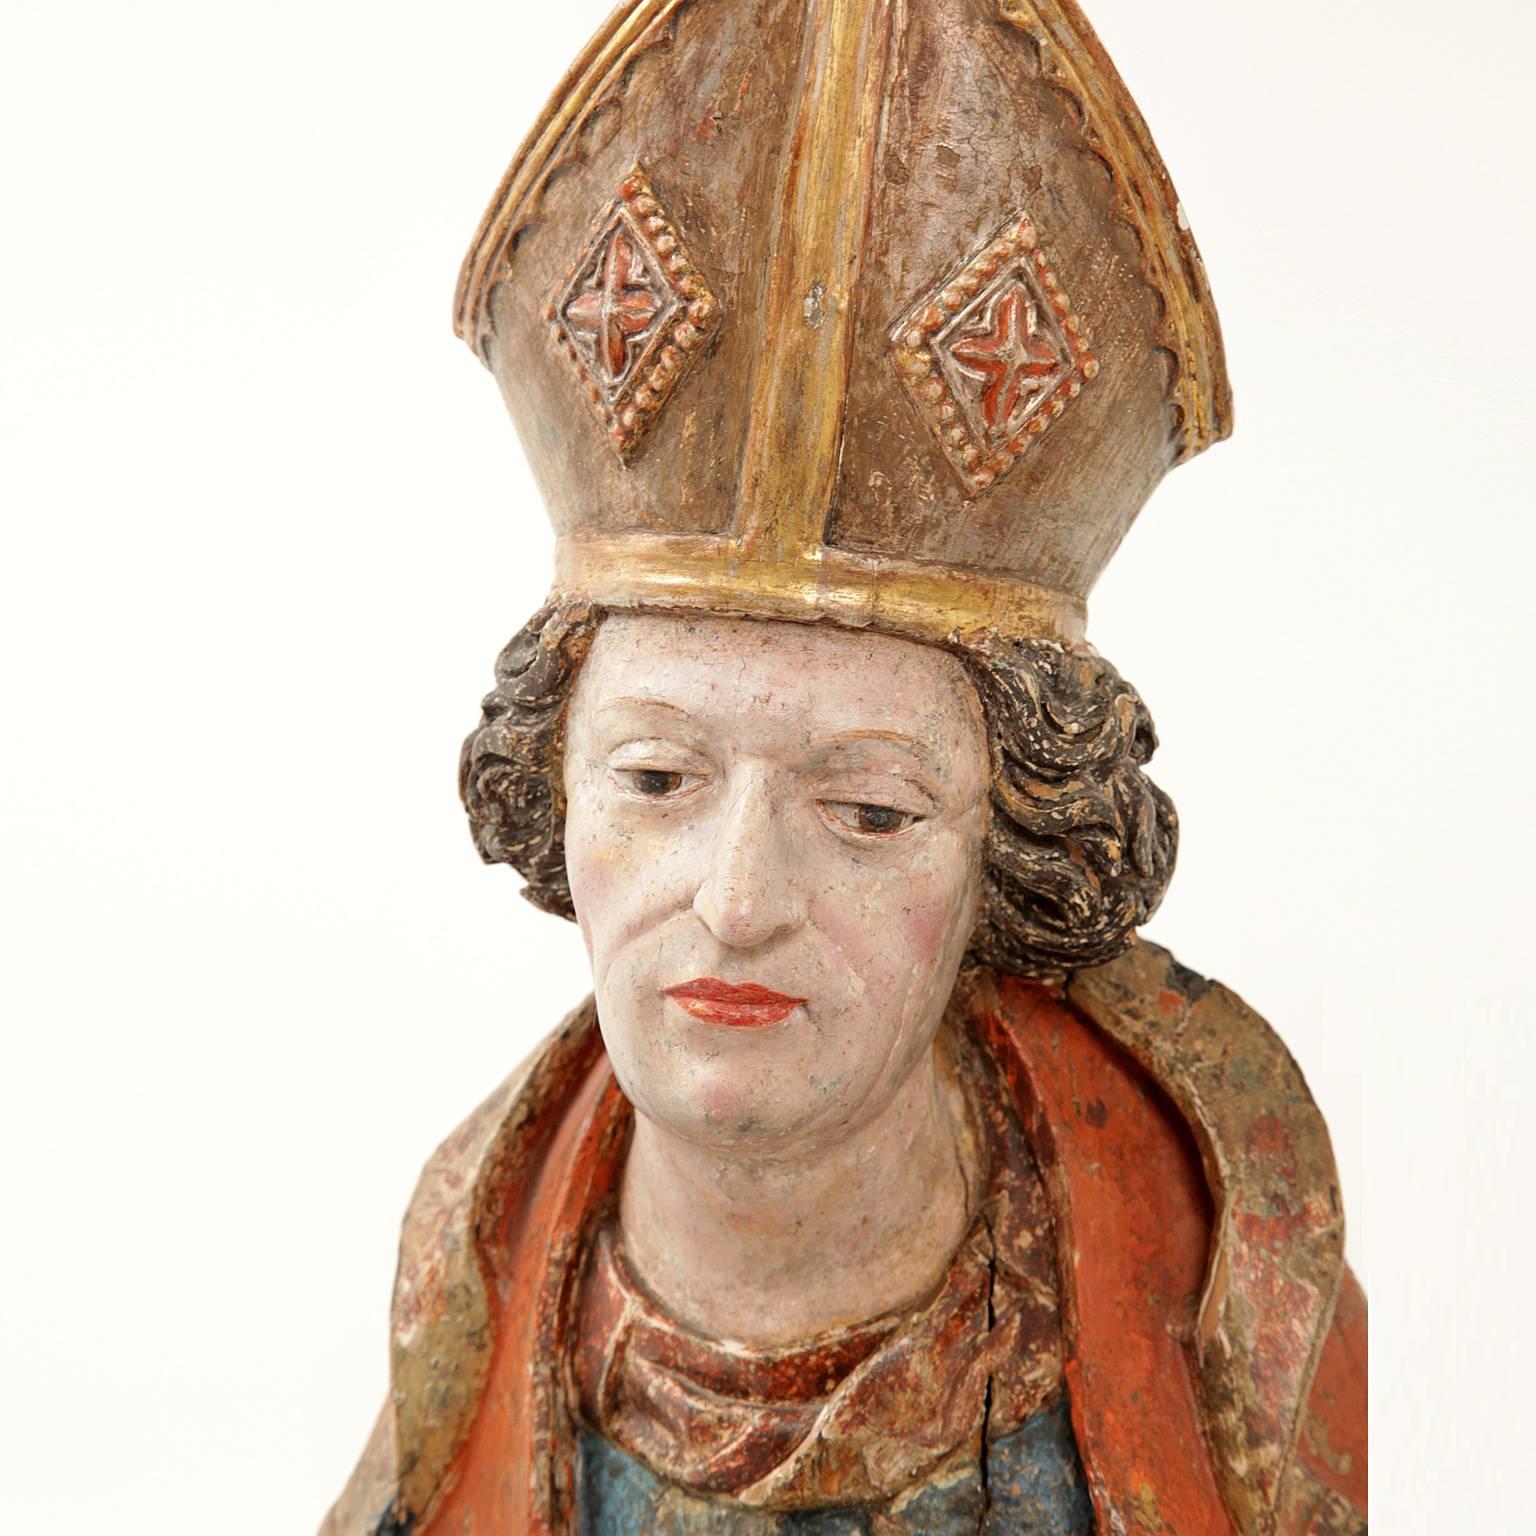 Gothic Sculpture of Saint Eligius, 1480-1500